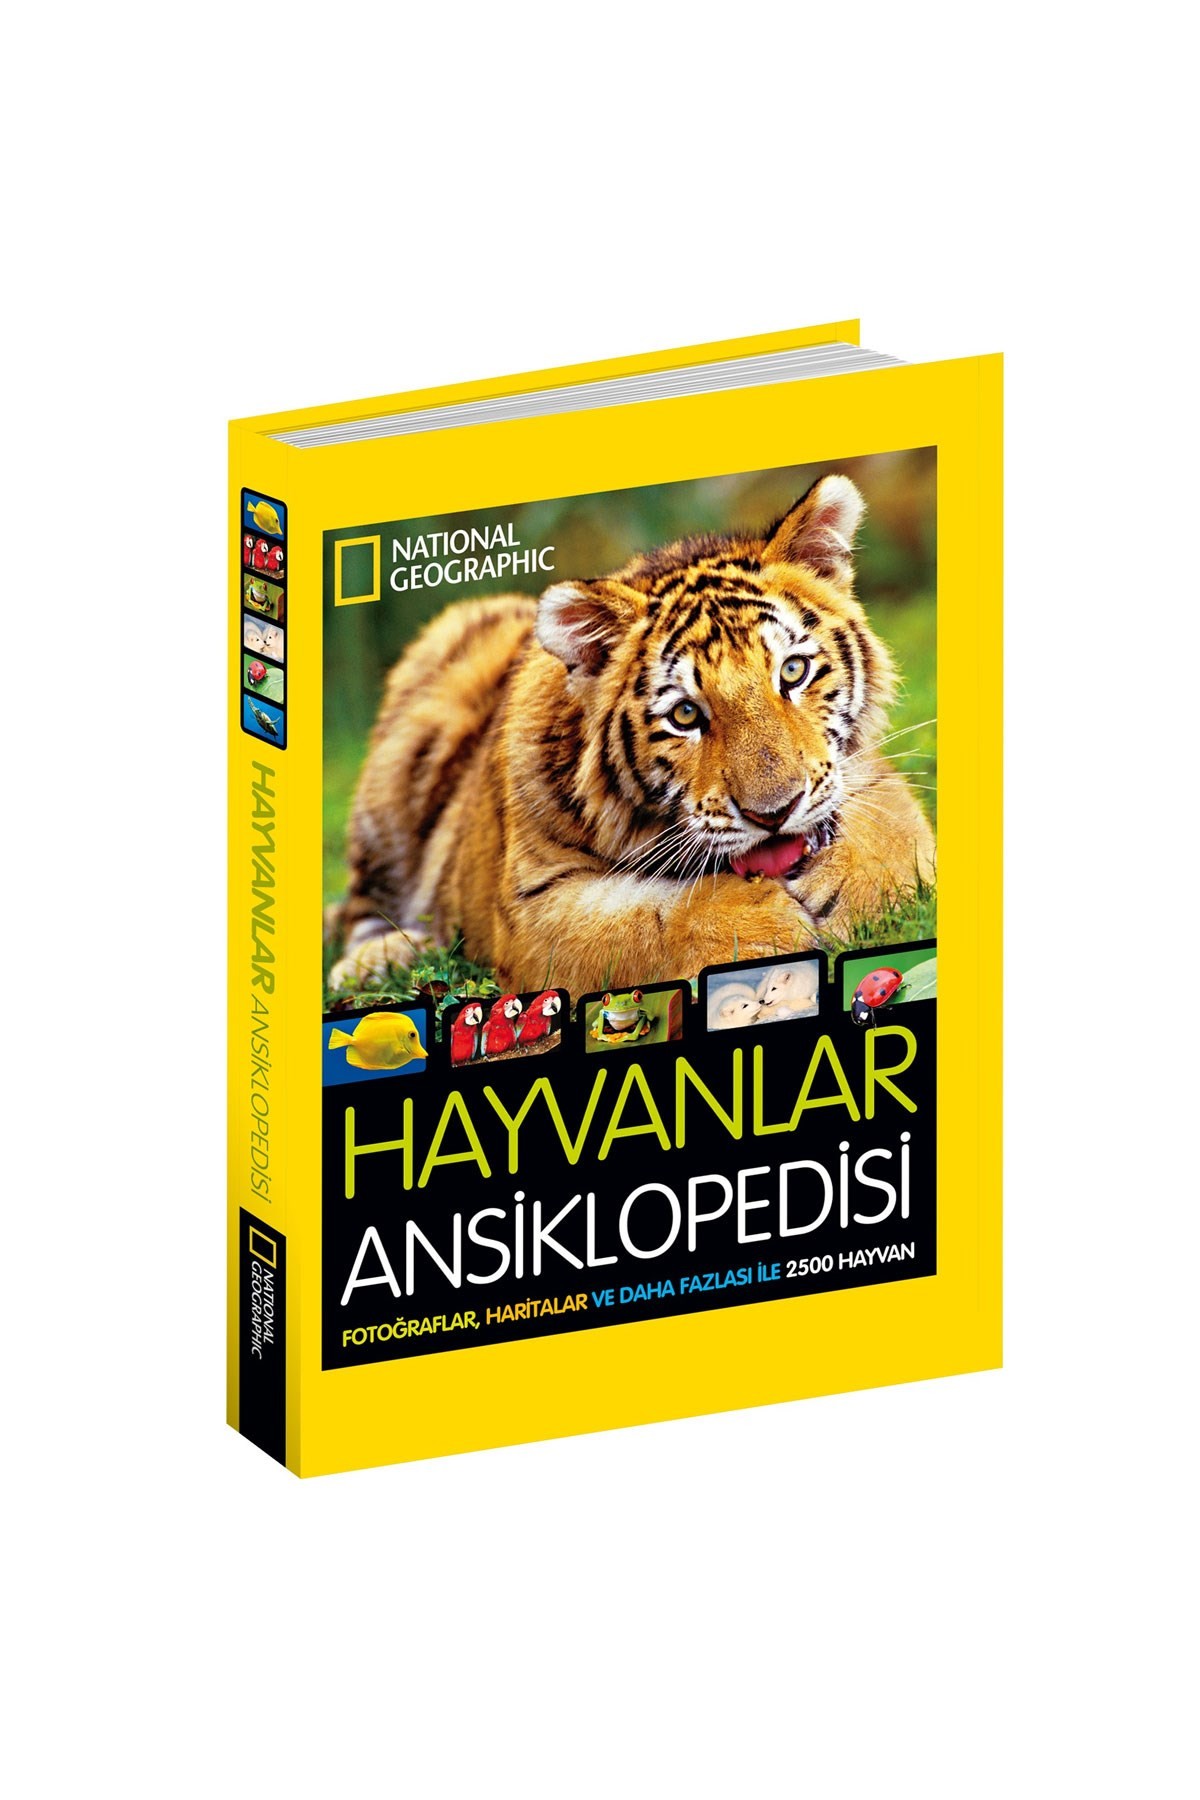 National Geographic Kids Hayvanlar Ansiklopedisi